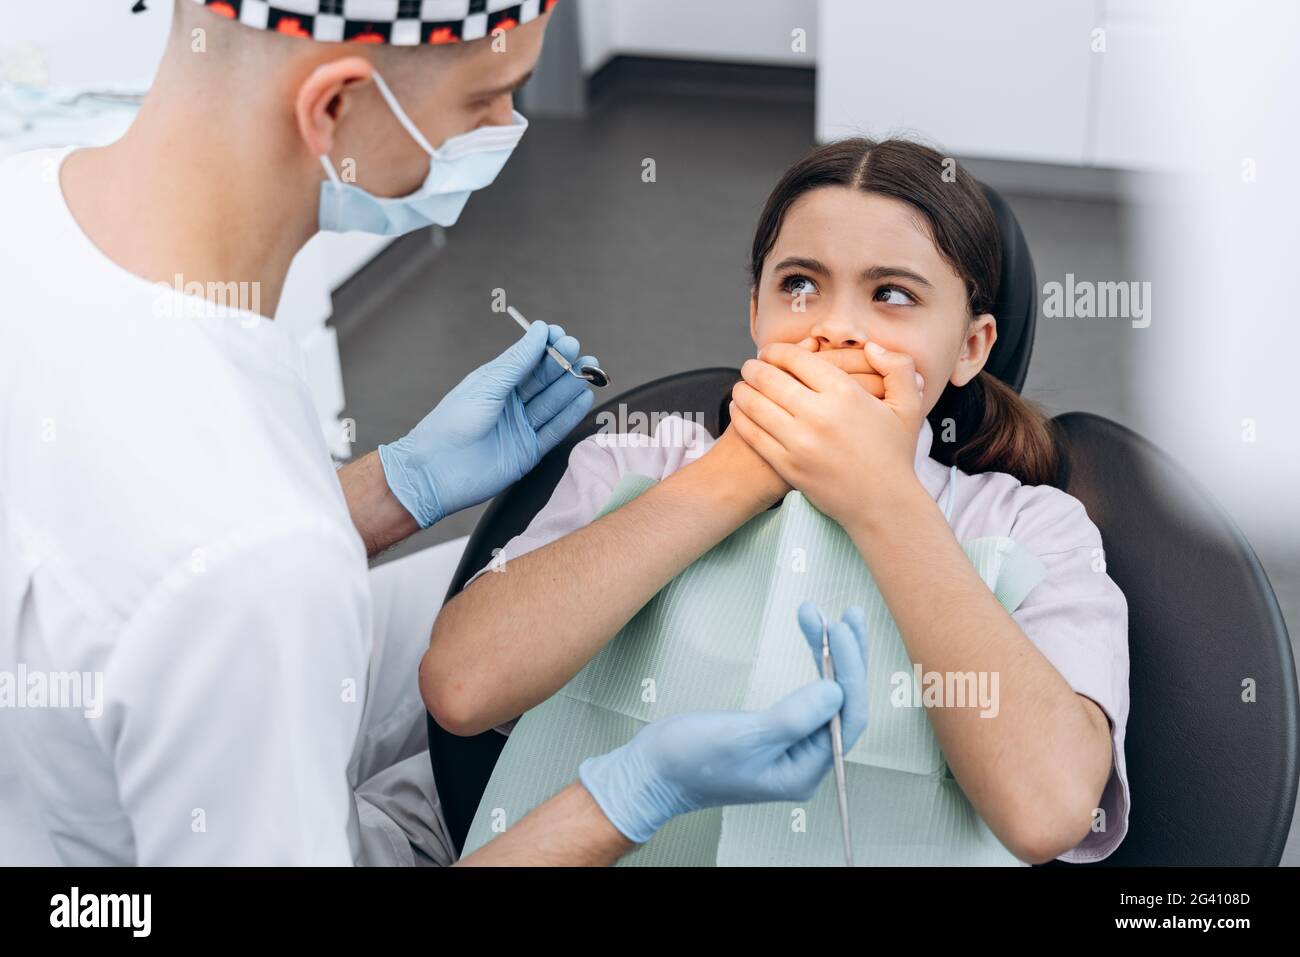 La bambina ha paura del dentista e cura i denti. In una sedia dentale, la ragazza copre la bocca con le mani. Foto Stock